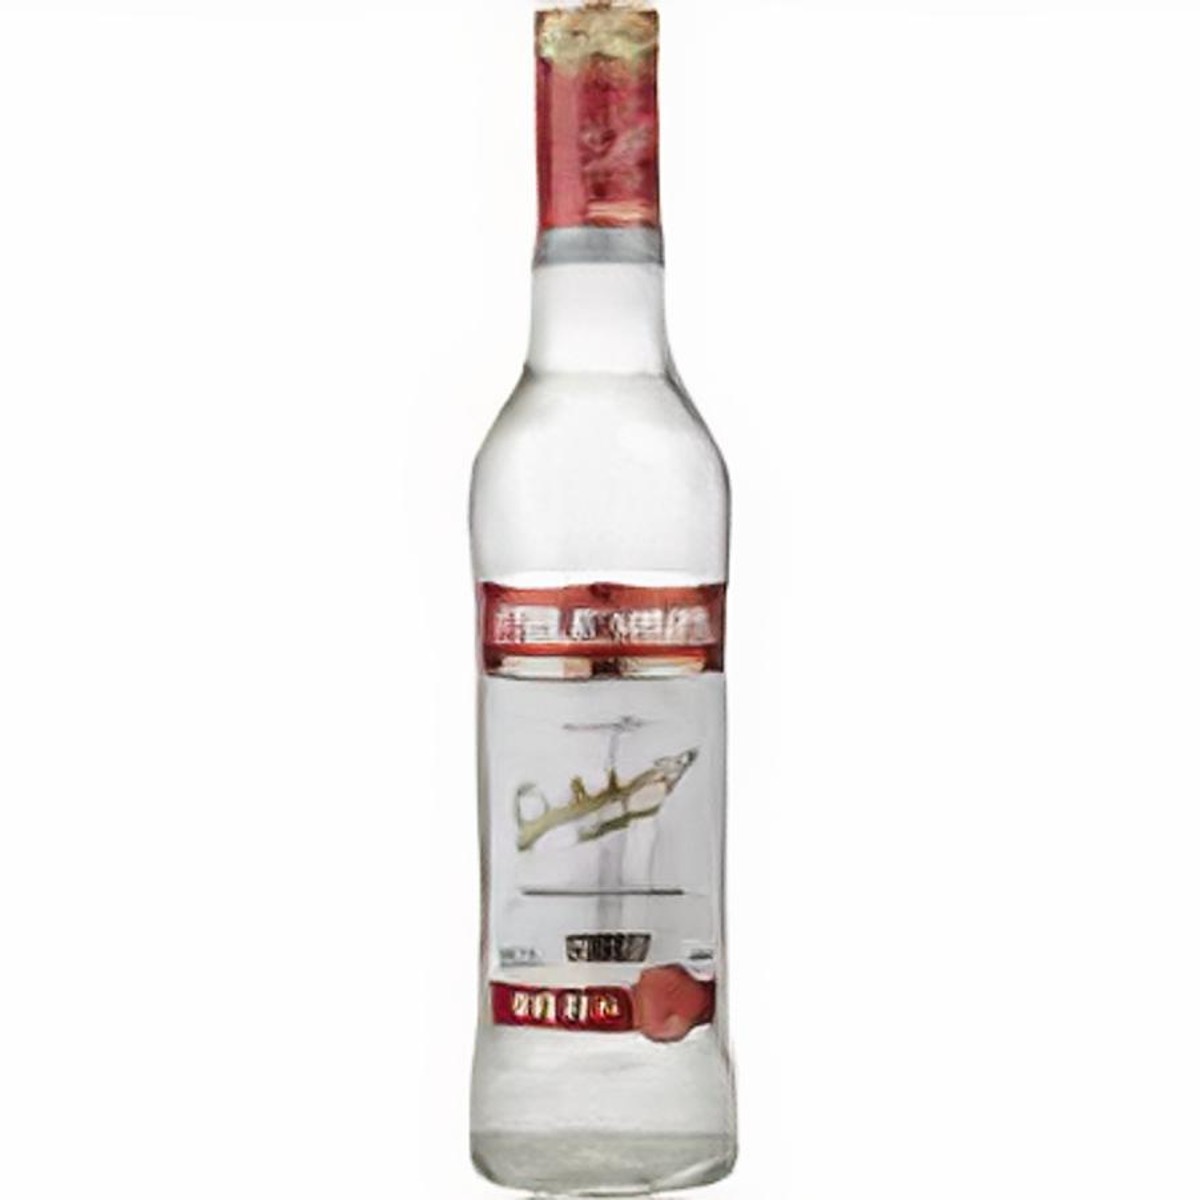 Smirnoff Red 40° - Vodka de Russie